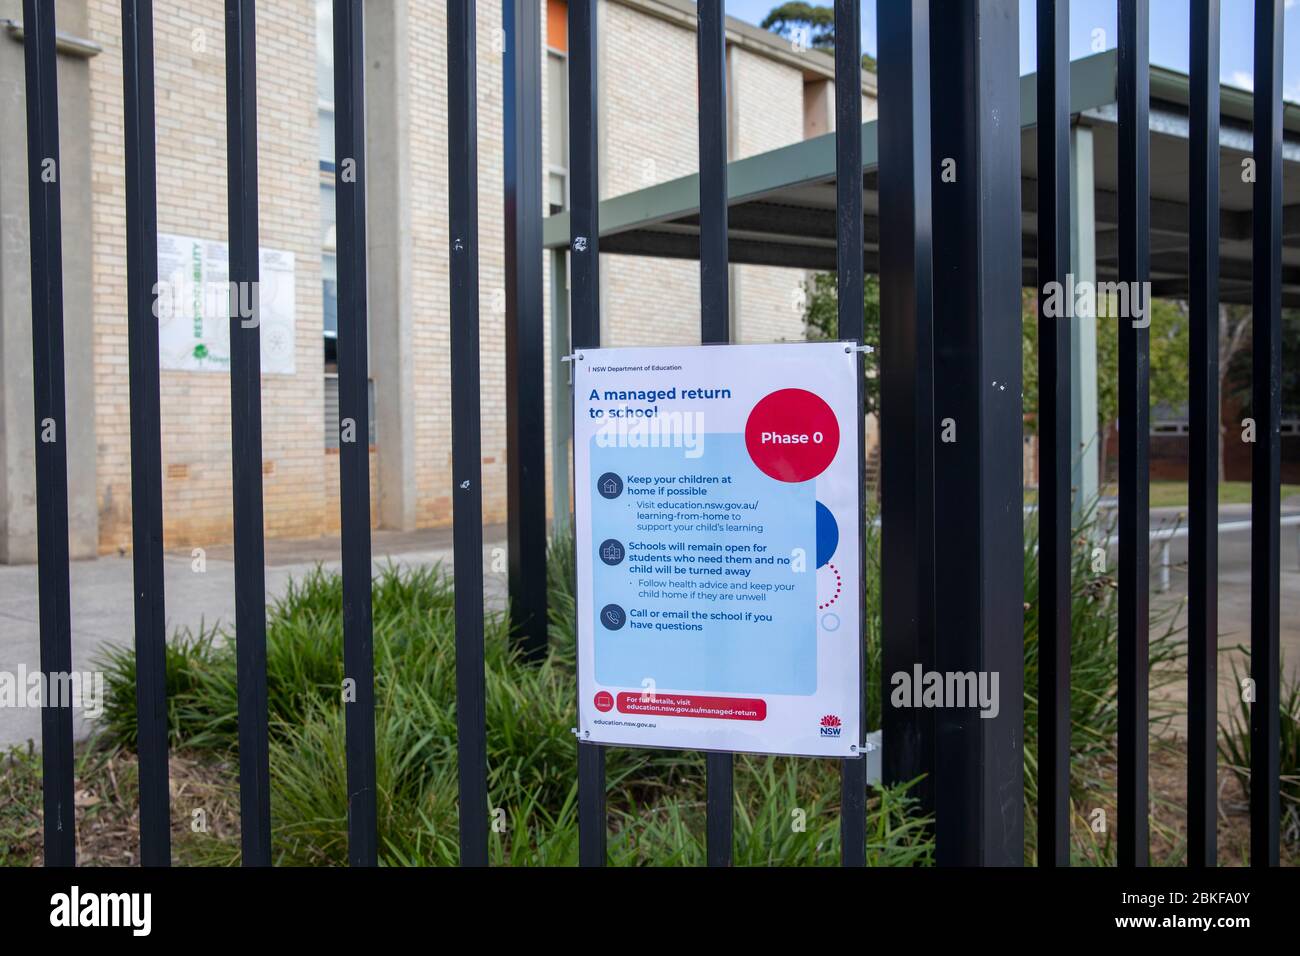 Les écoles de Sydney postent les avis COVID 19 aux portes de l'école concernant le retour progressif à l'école pour les enfants à partir du 11 mai 2020 Banque D'Images